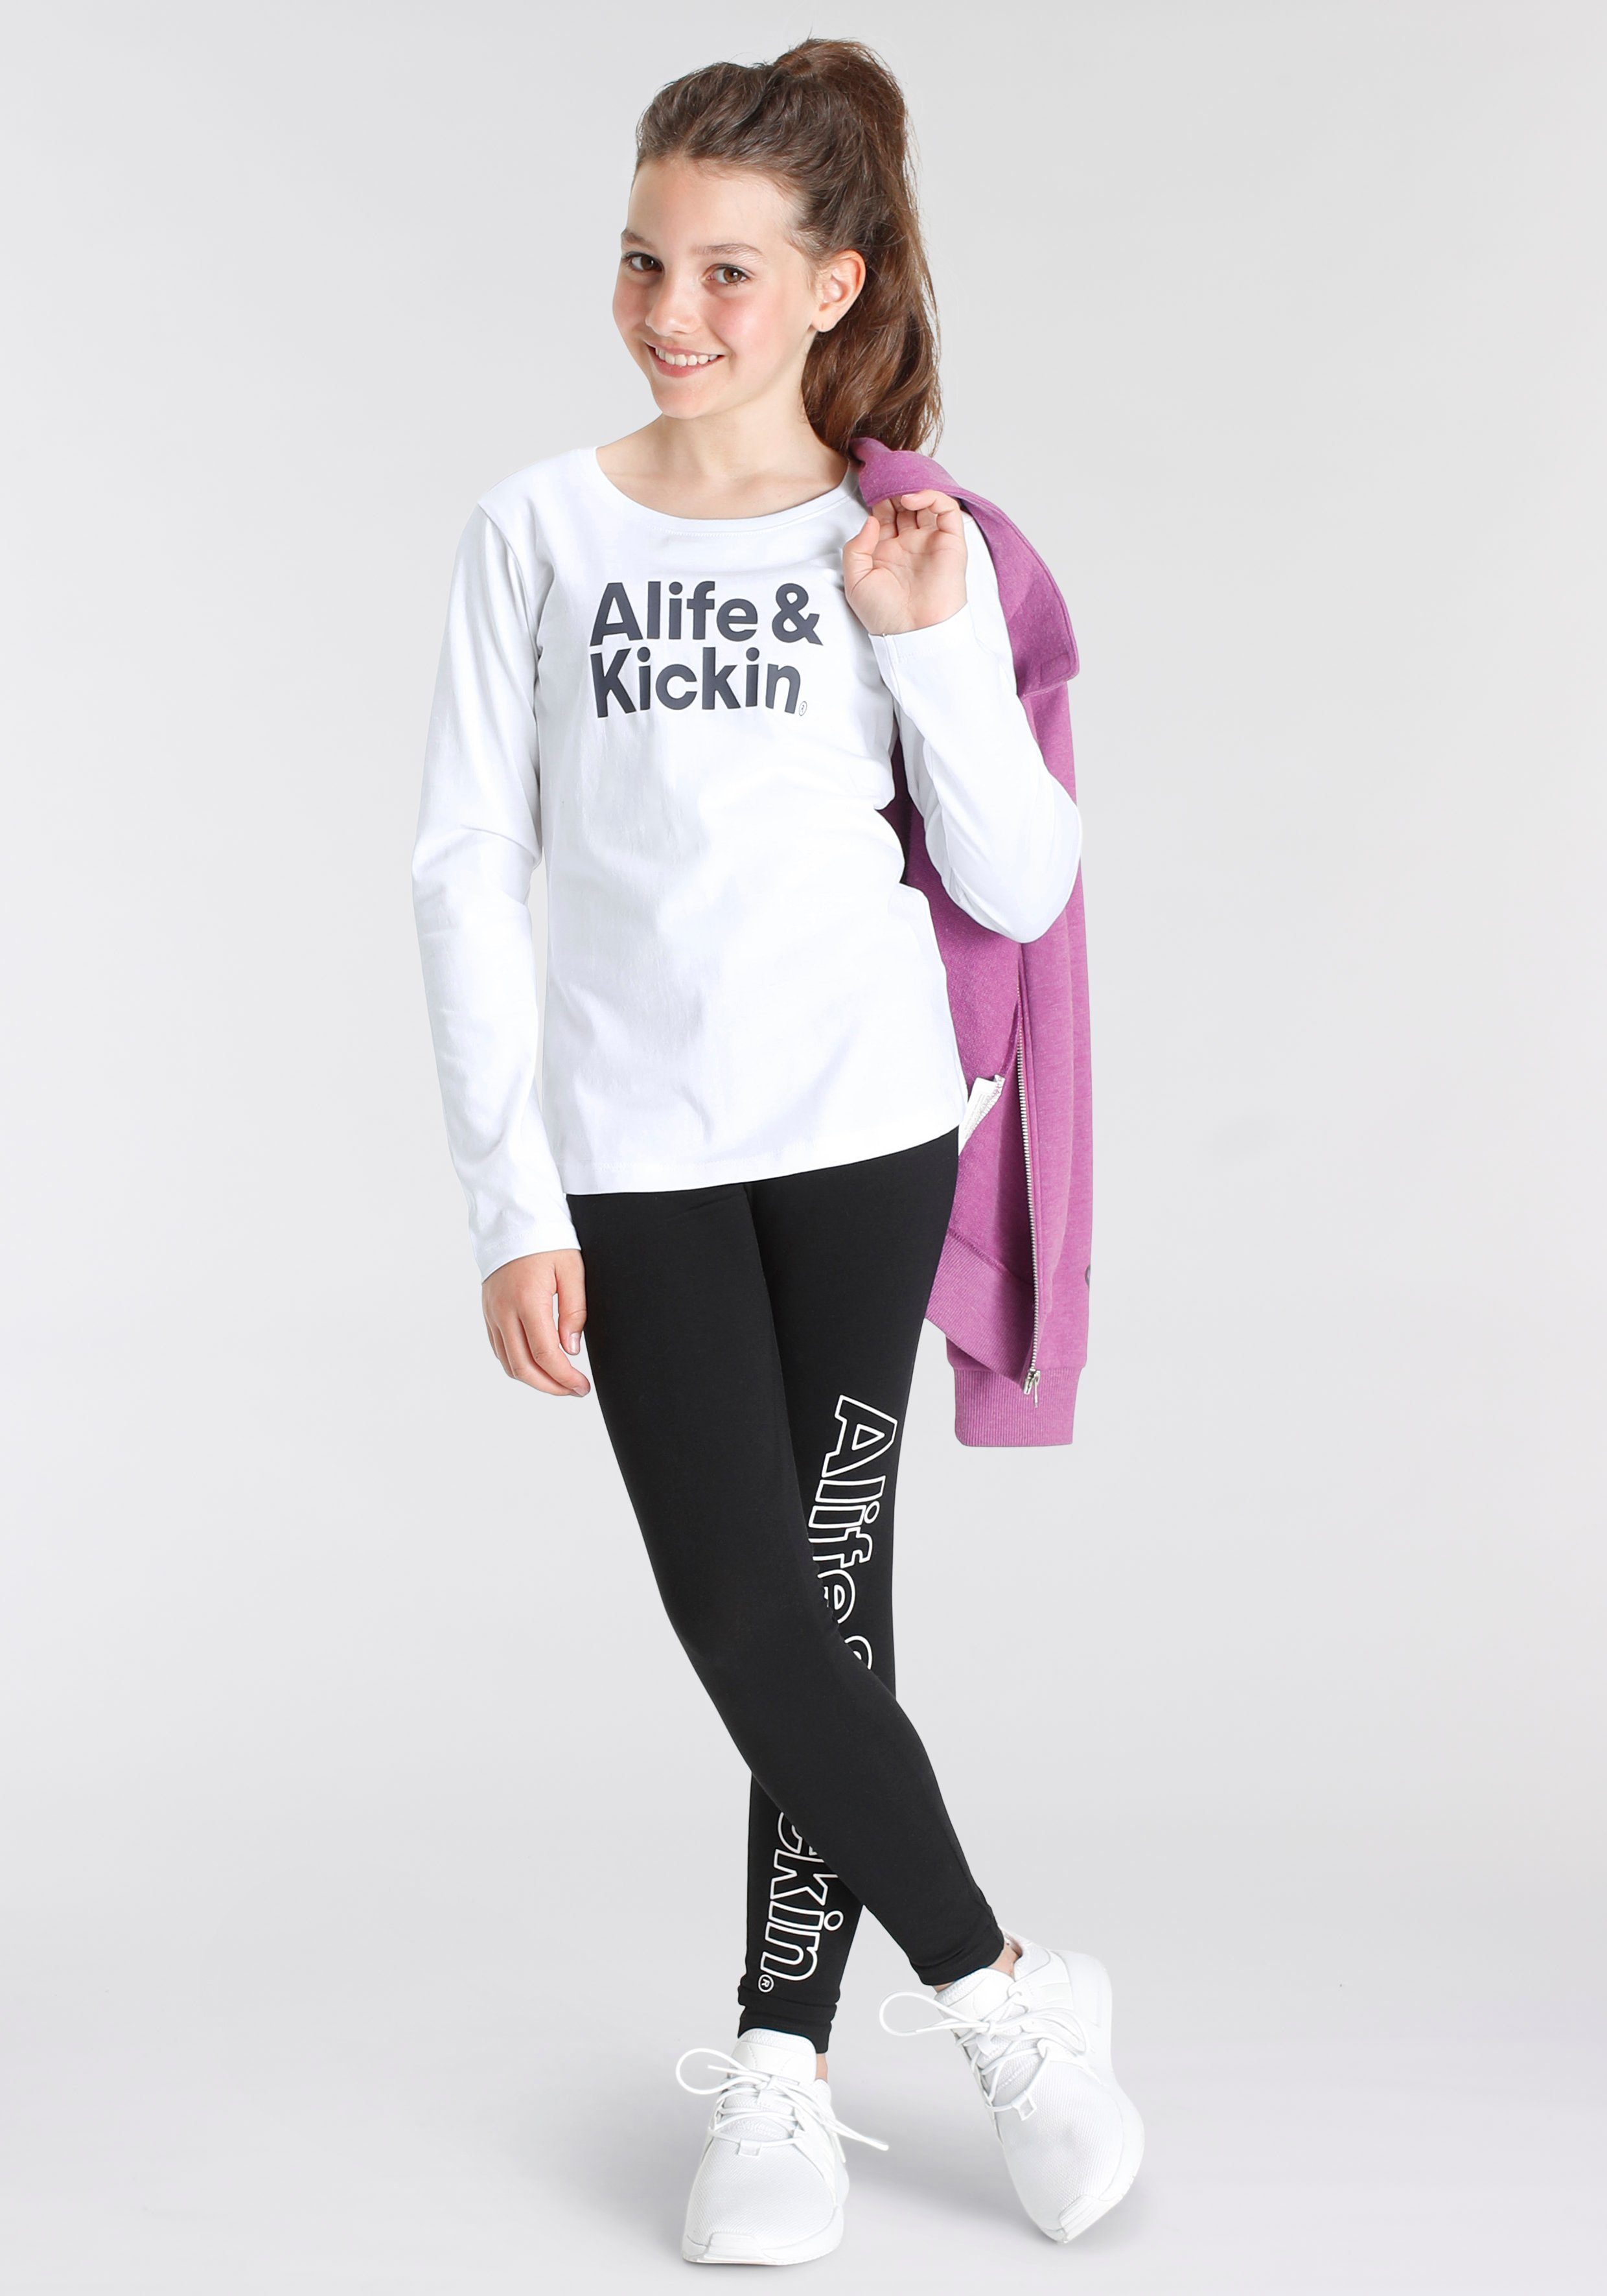 Druck Alife Kickin Logo & für NEUE Kids. Langarmshirt & mit Alife Kickin MARKE!